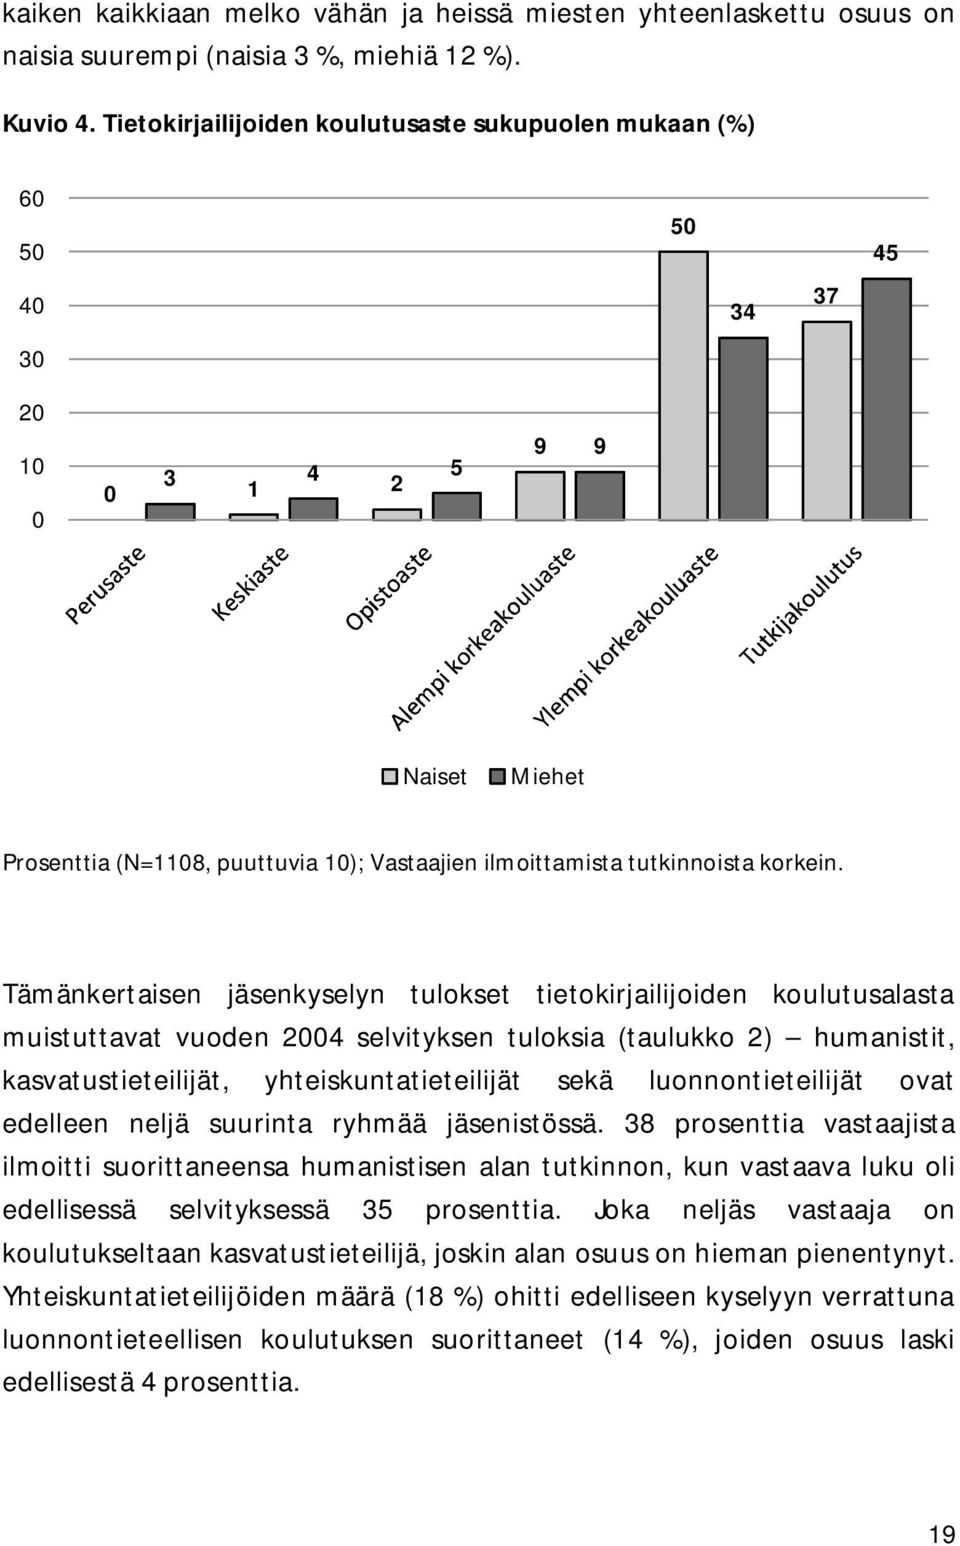 Tämänkertaisen jäsenkyselyn tulokset tietokirjailijoiden koulutusalasta muistuttavat vuoden 2004 selvityksen tuloksia (taulukko 2) humanistit, kasvatustieteilijät, yhteiskuntatieteilijät sekä